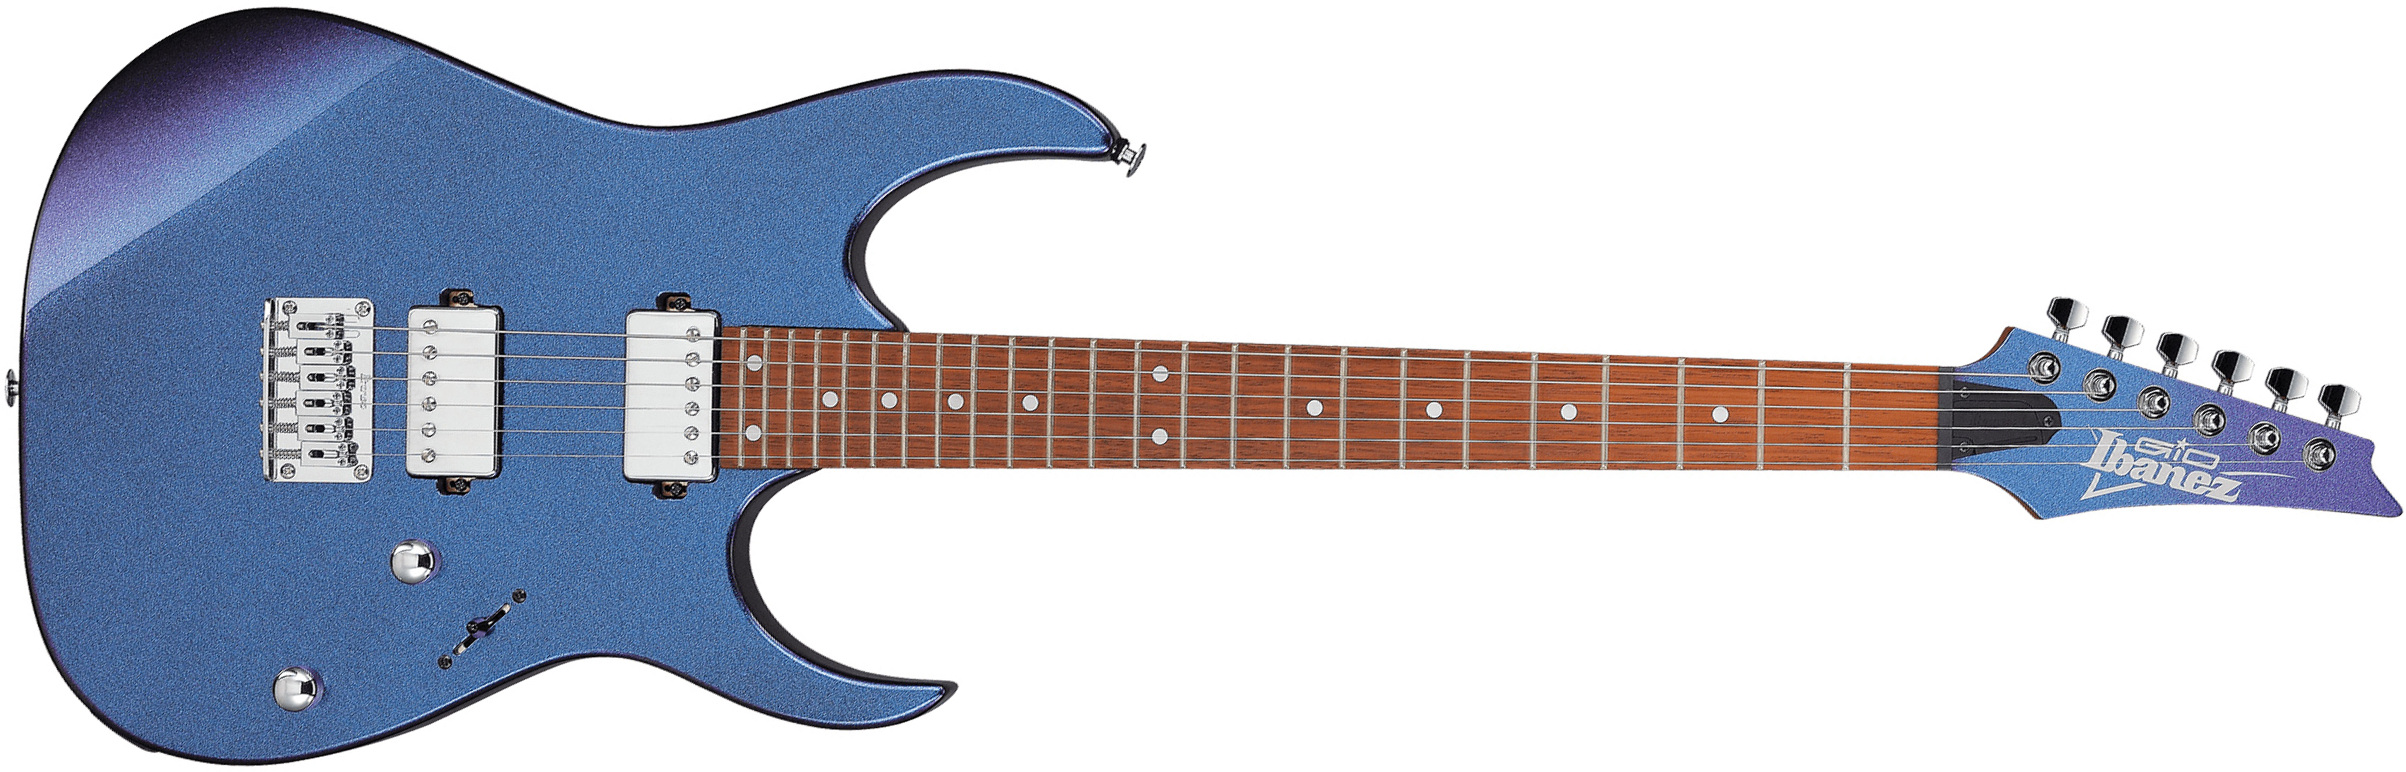 Ibanez Grg121sp Bmc Ltd Gio Hh Ht Jat - Blue Metal Cameleon - Str shape electric guitar - Main picture